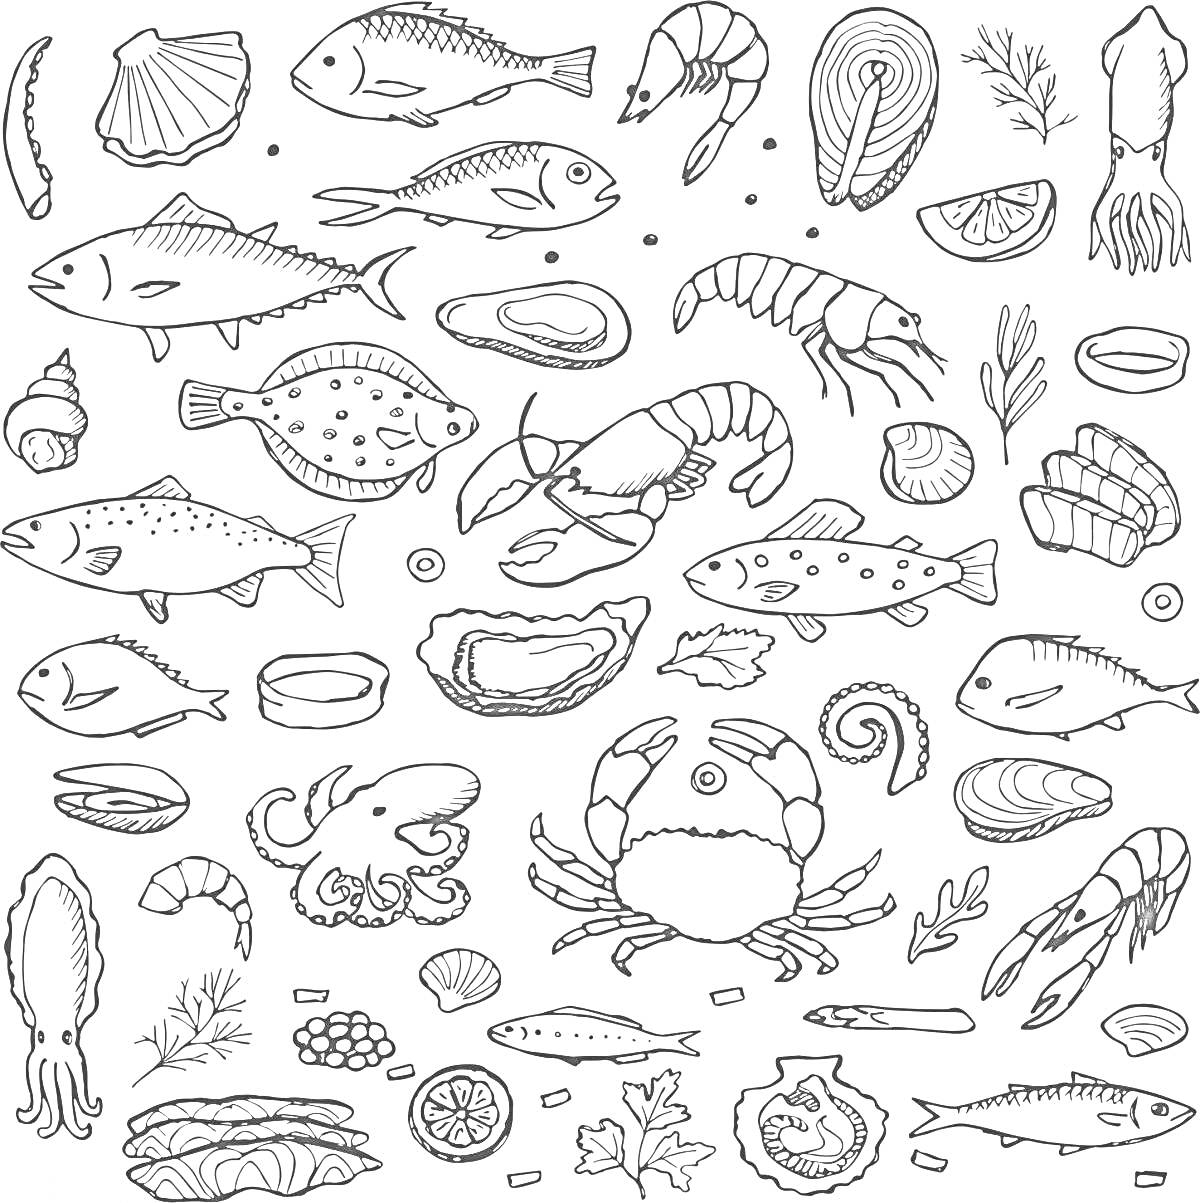 Раскраска Рыбные продукты и морепродукты (рыбы, креветки, краб, моллюски, устрицы, лосось, кальмар, лимонные дольки, зелень)